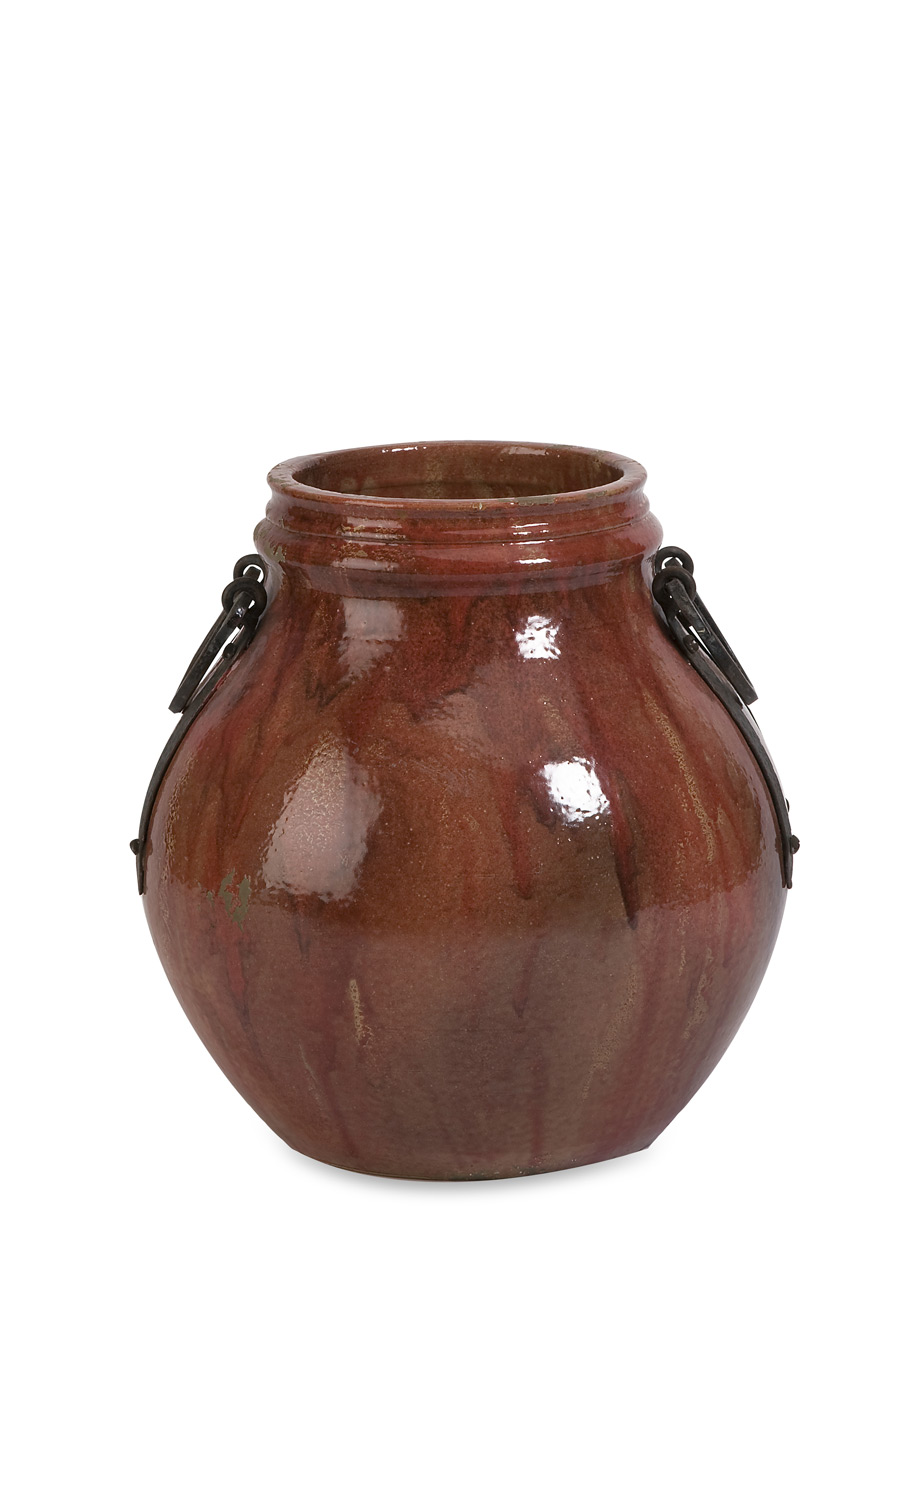 IMAX Elnora Short Vase with Metal Handle